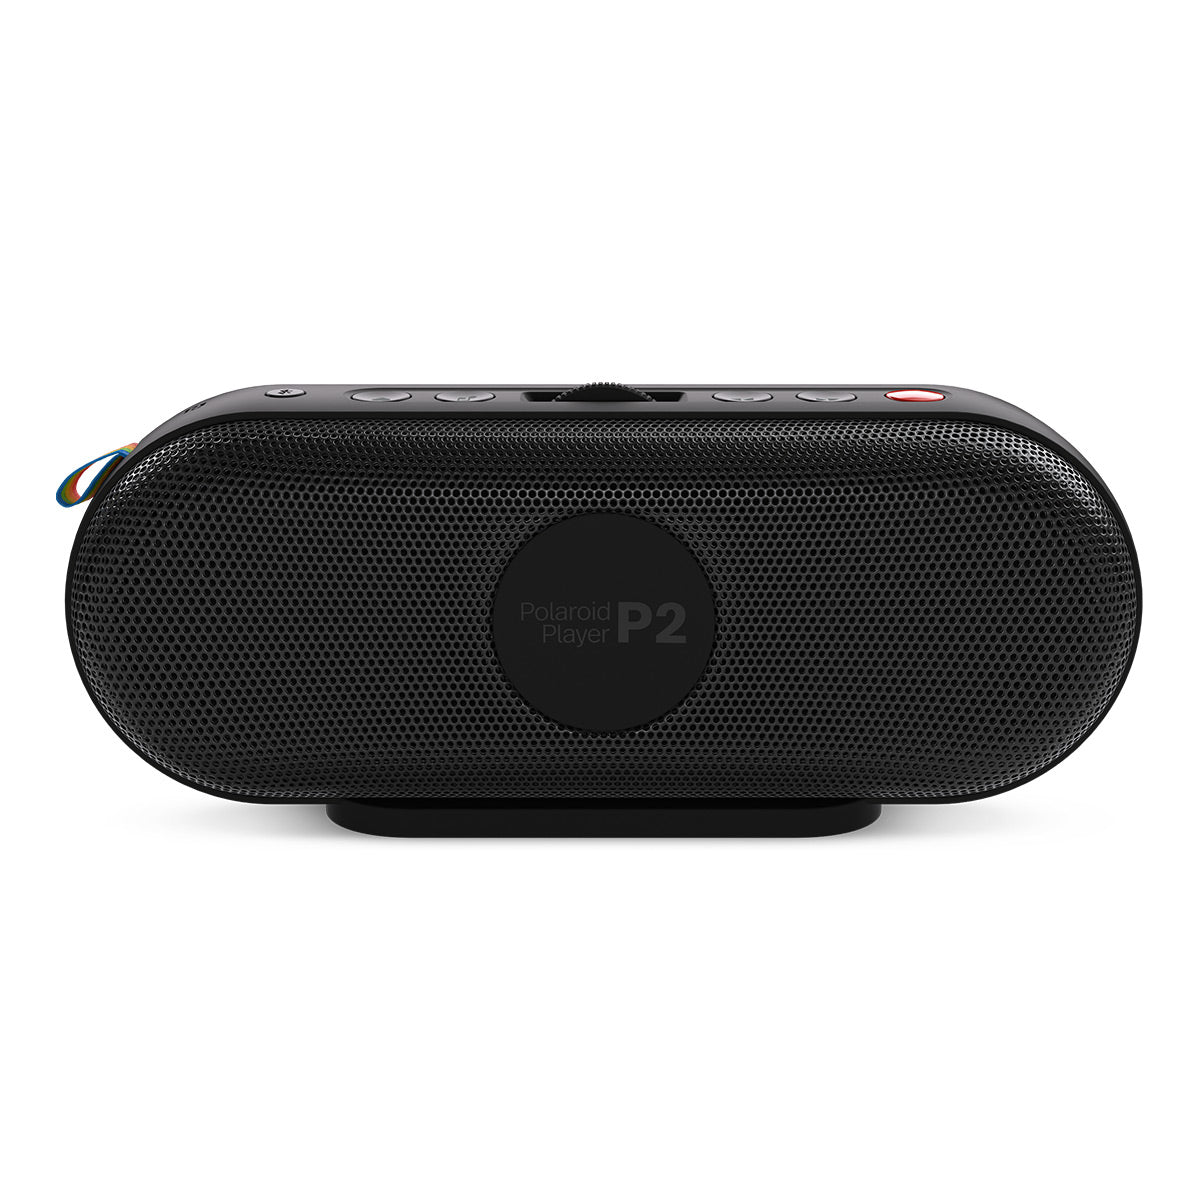 Polaroid P2 Portable Bluetooth Speaker with Wrist Strap (Black & White)